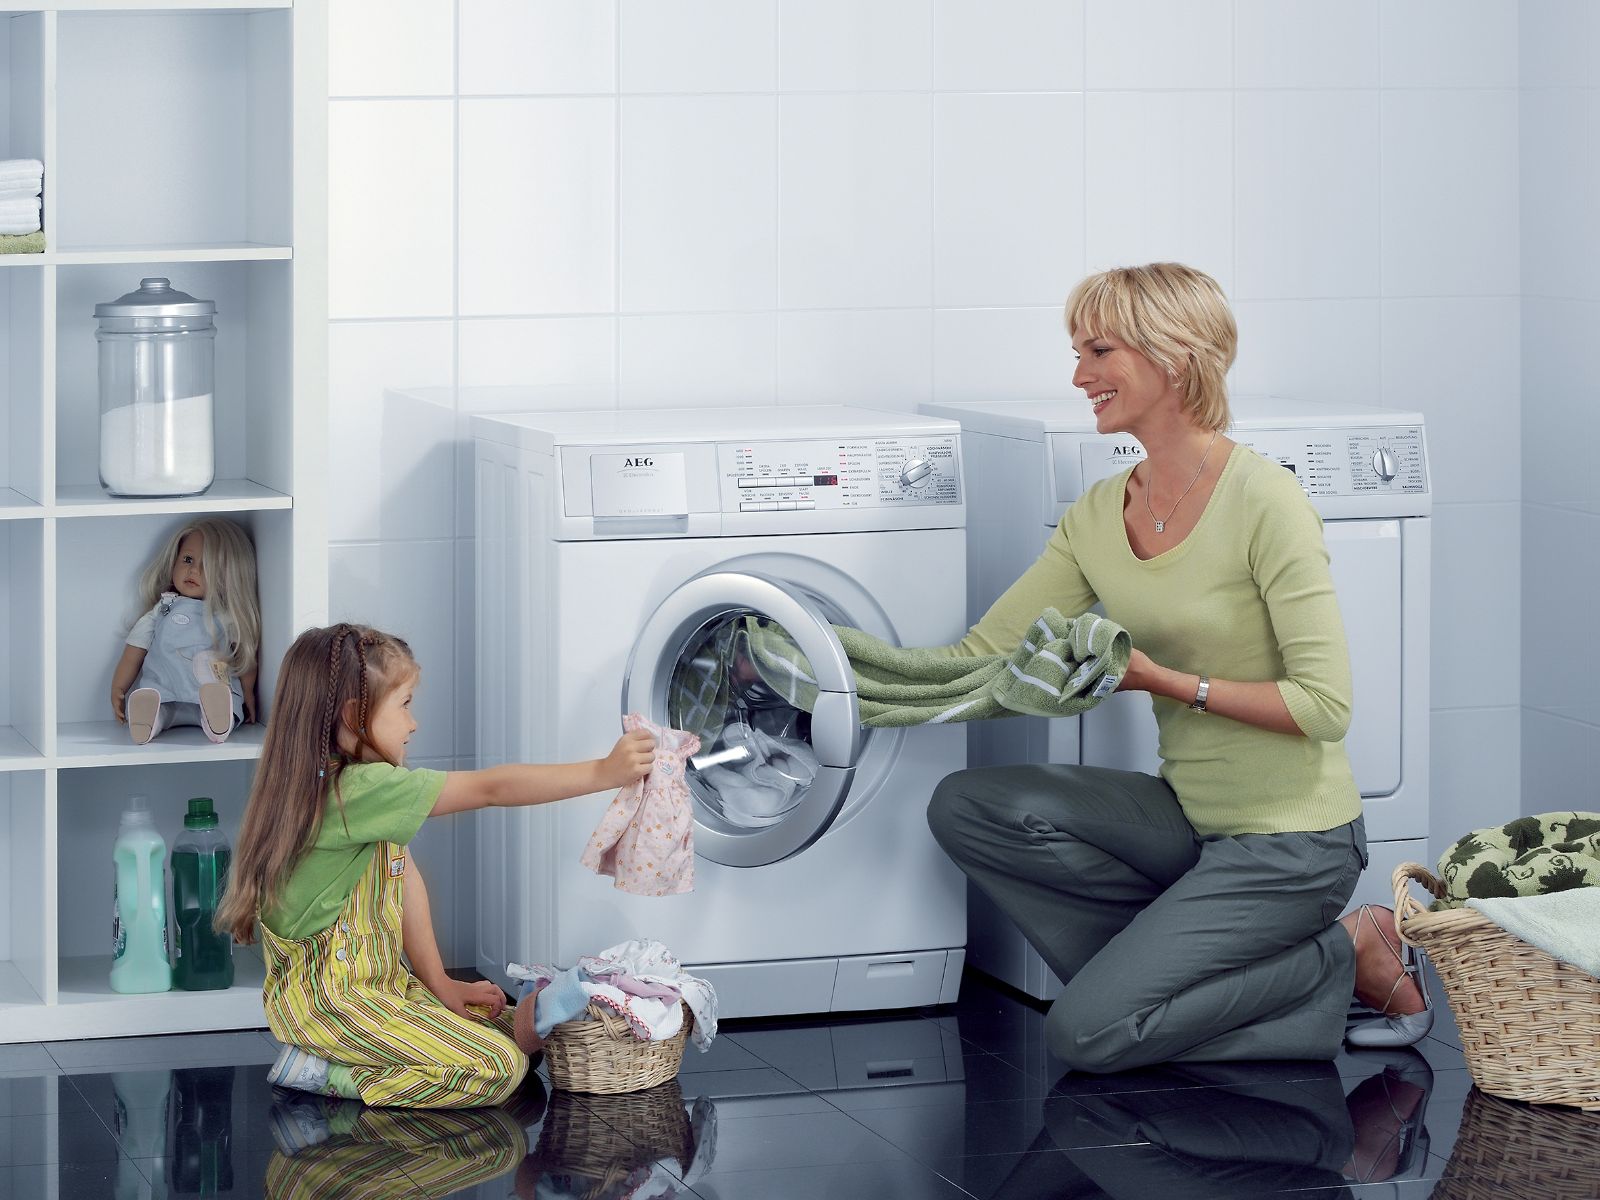  Máy giặt Electrolux được thiết lập nhiều chế độ giặt hiệu quả cách sử dụng máy giặt Electrolux 7 kg